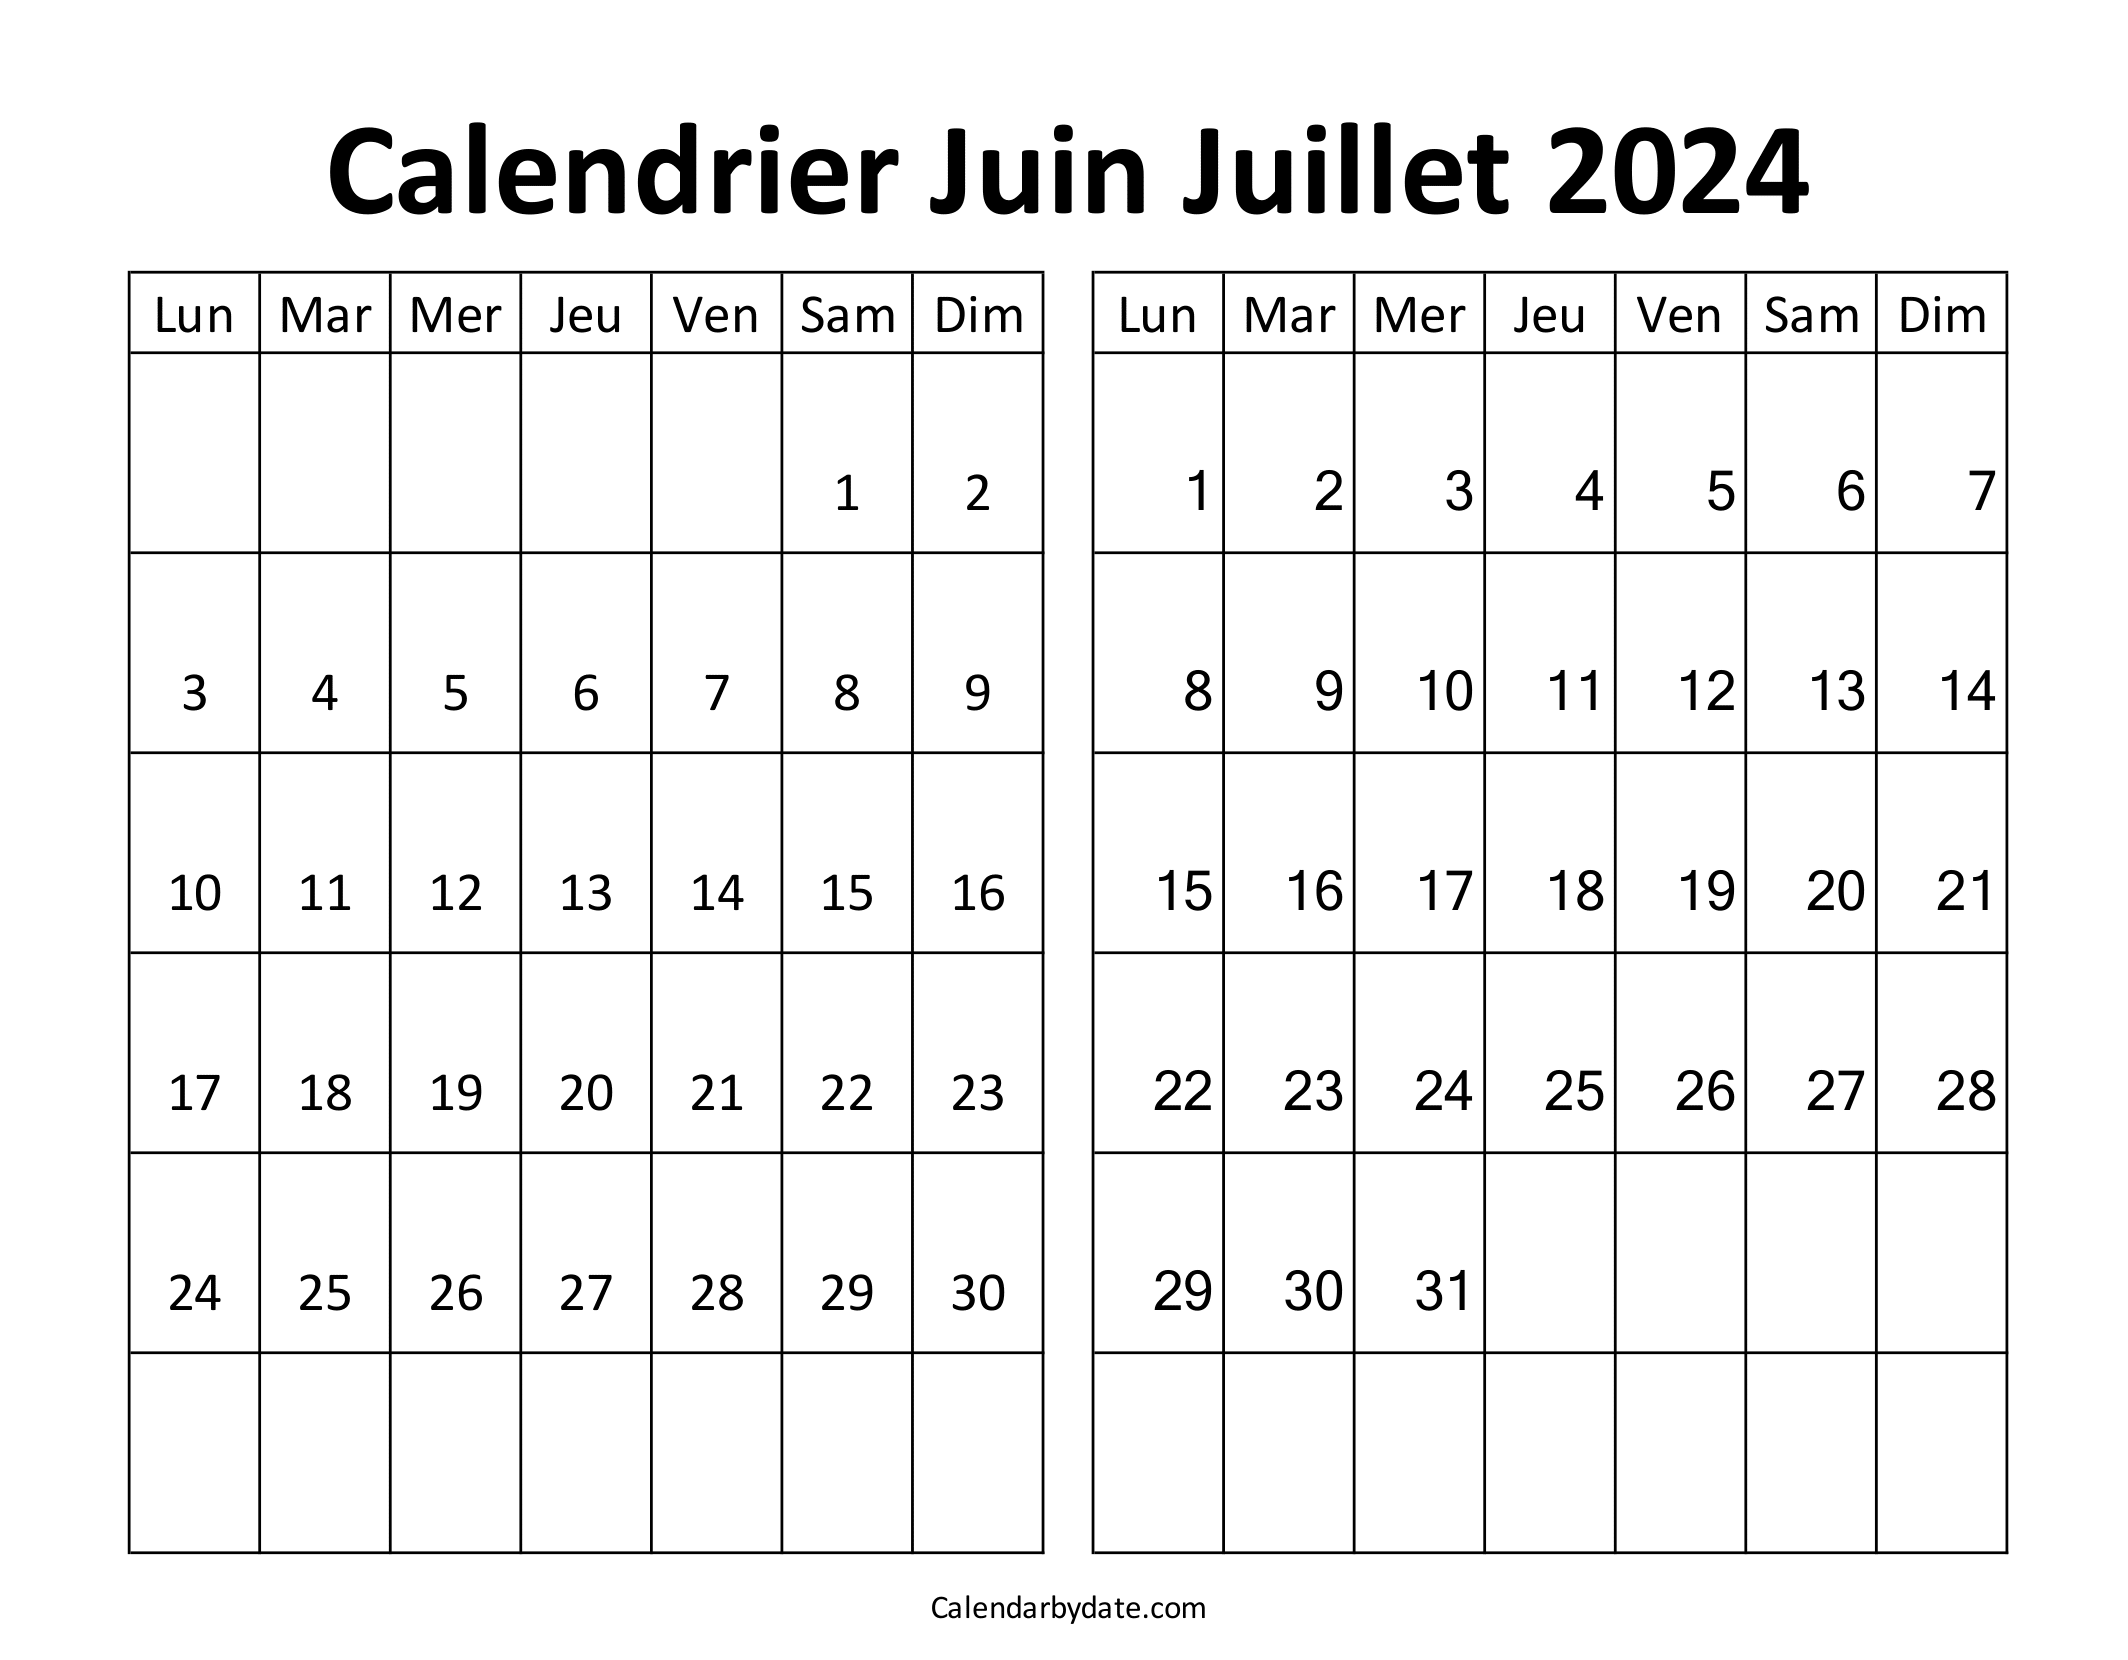 Calendrier mensuel juin juillet 2024